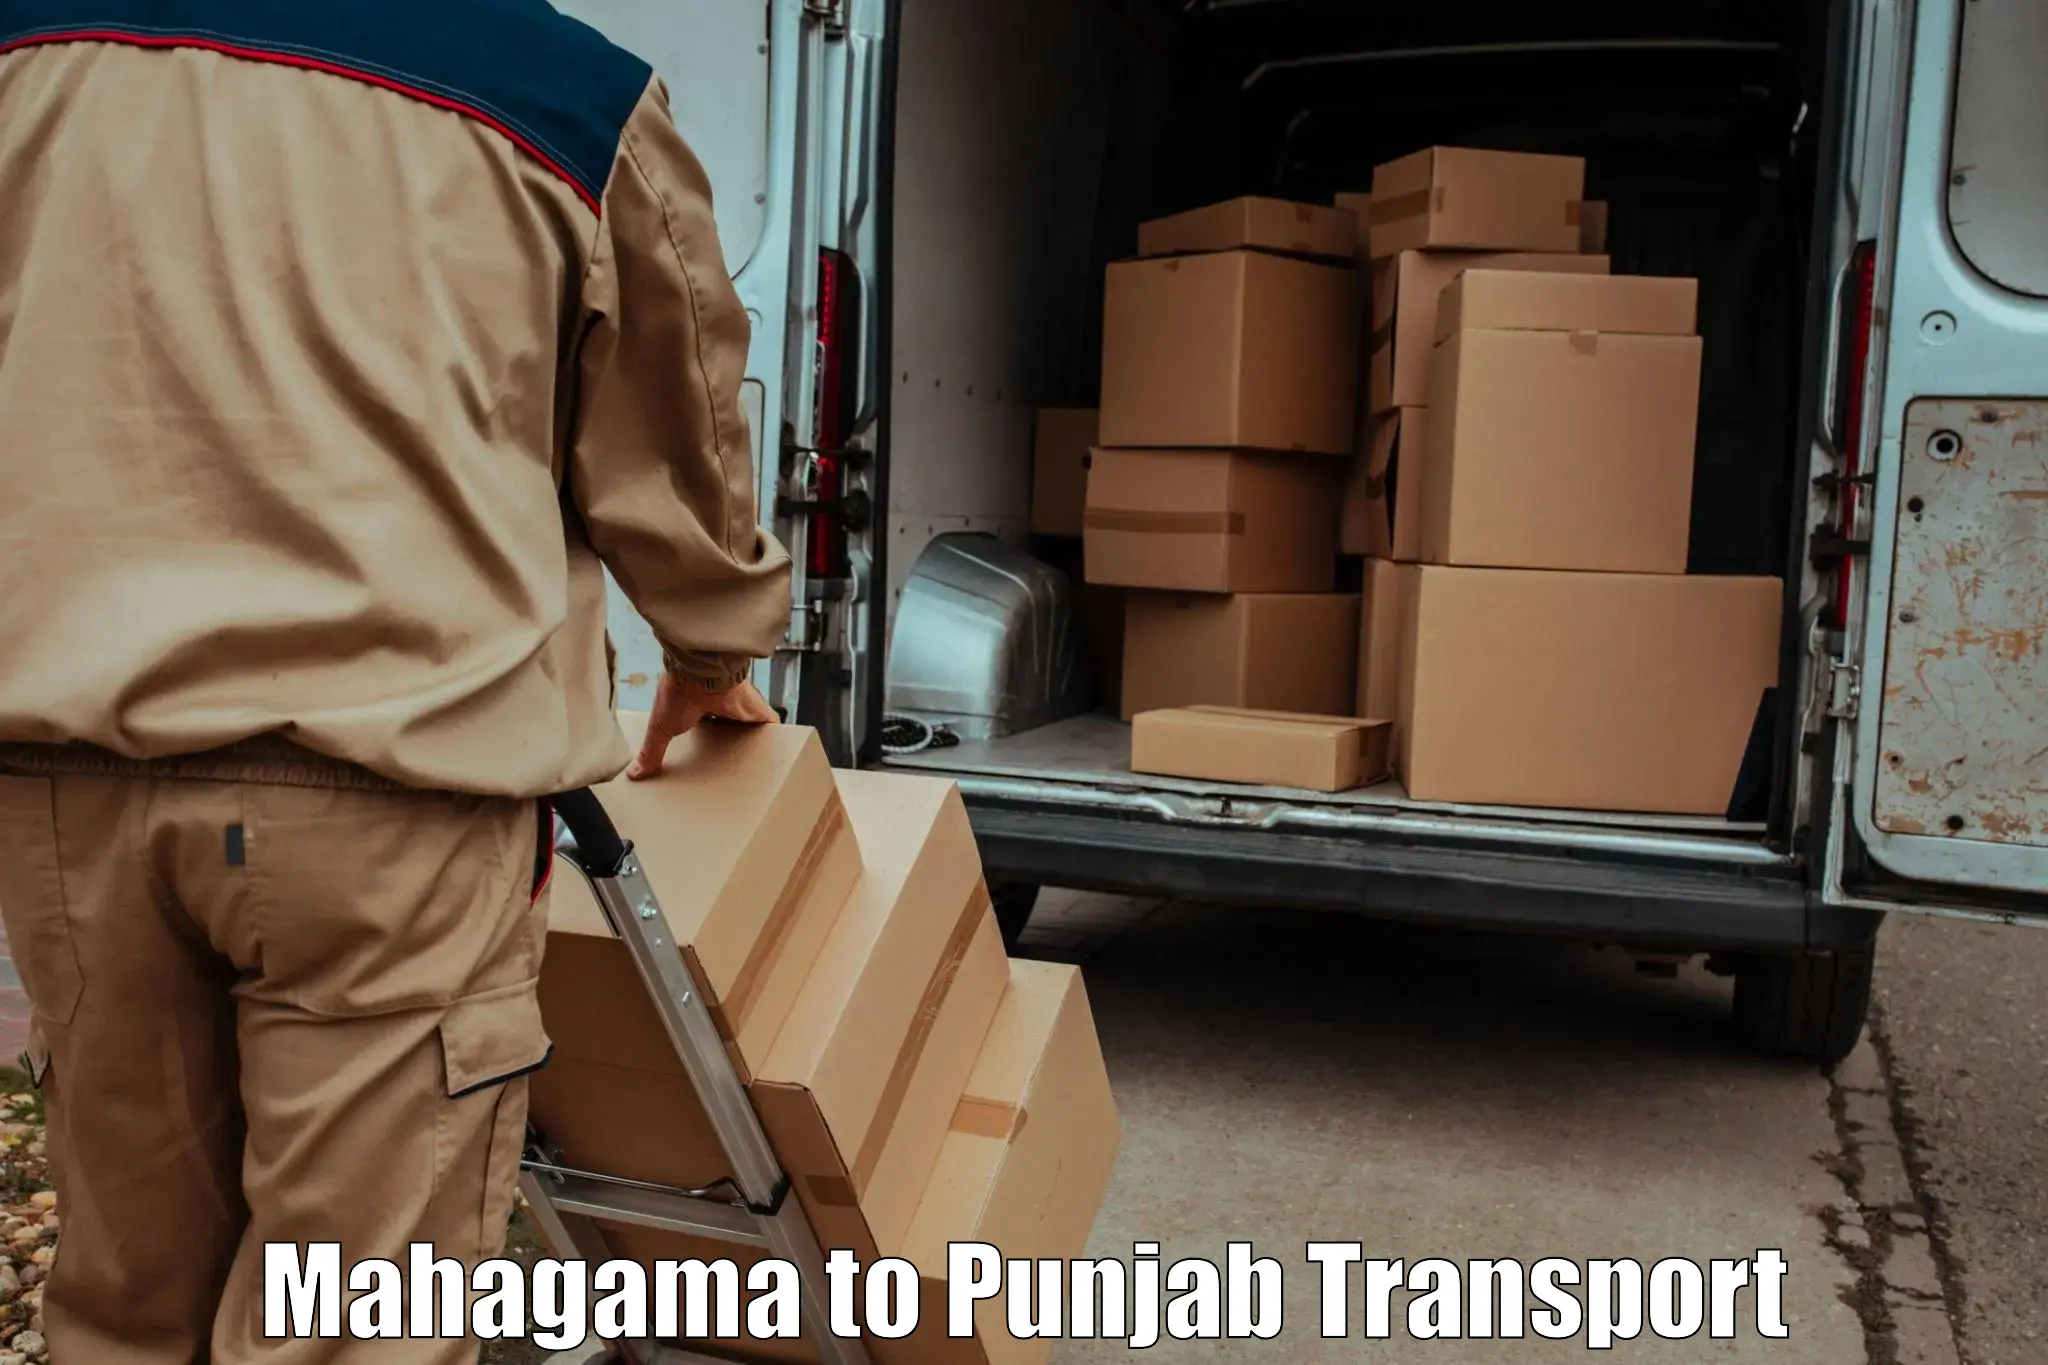 Road transport online services Mahagama to Rupnagar